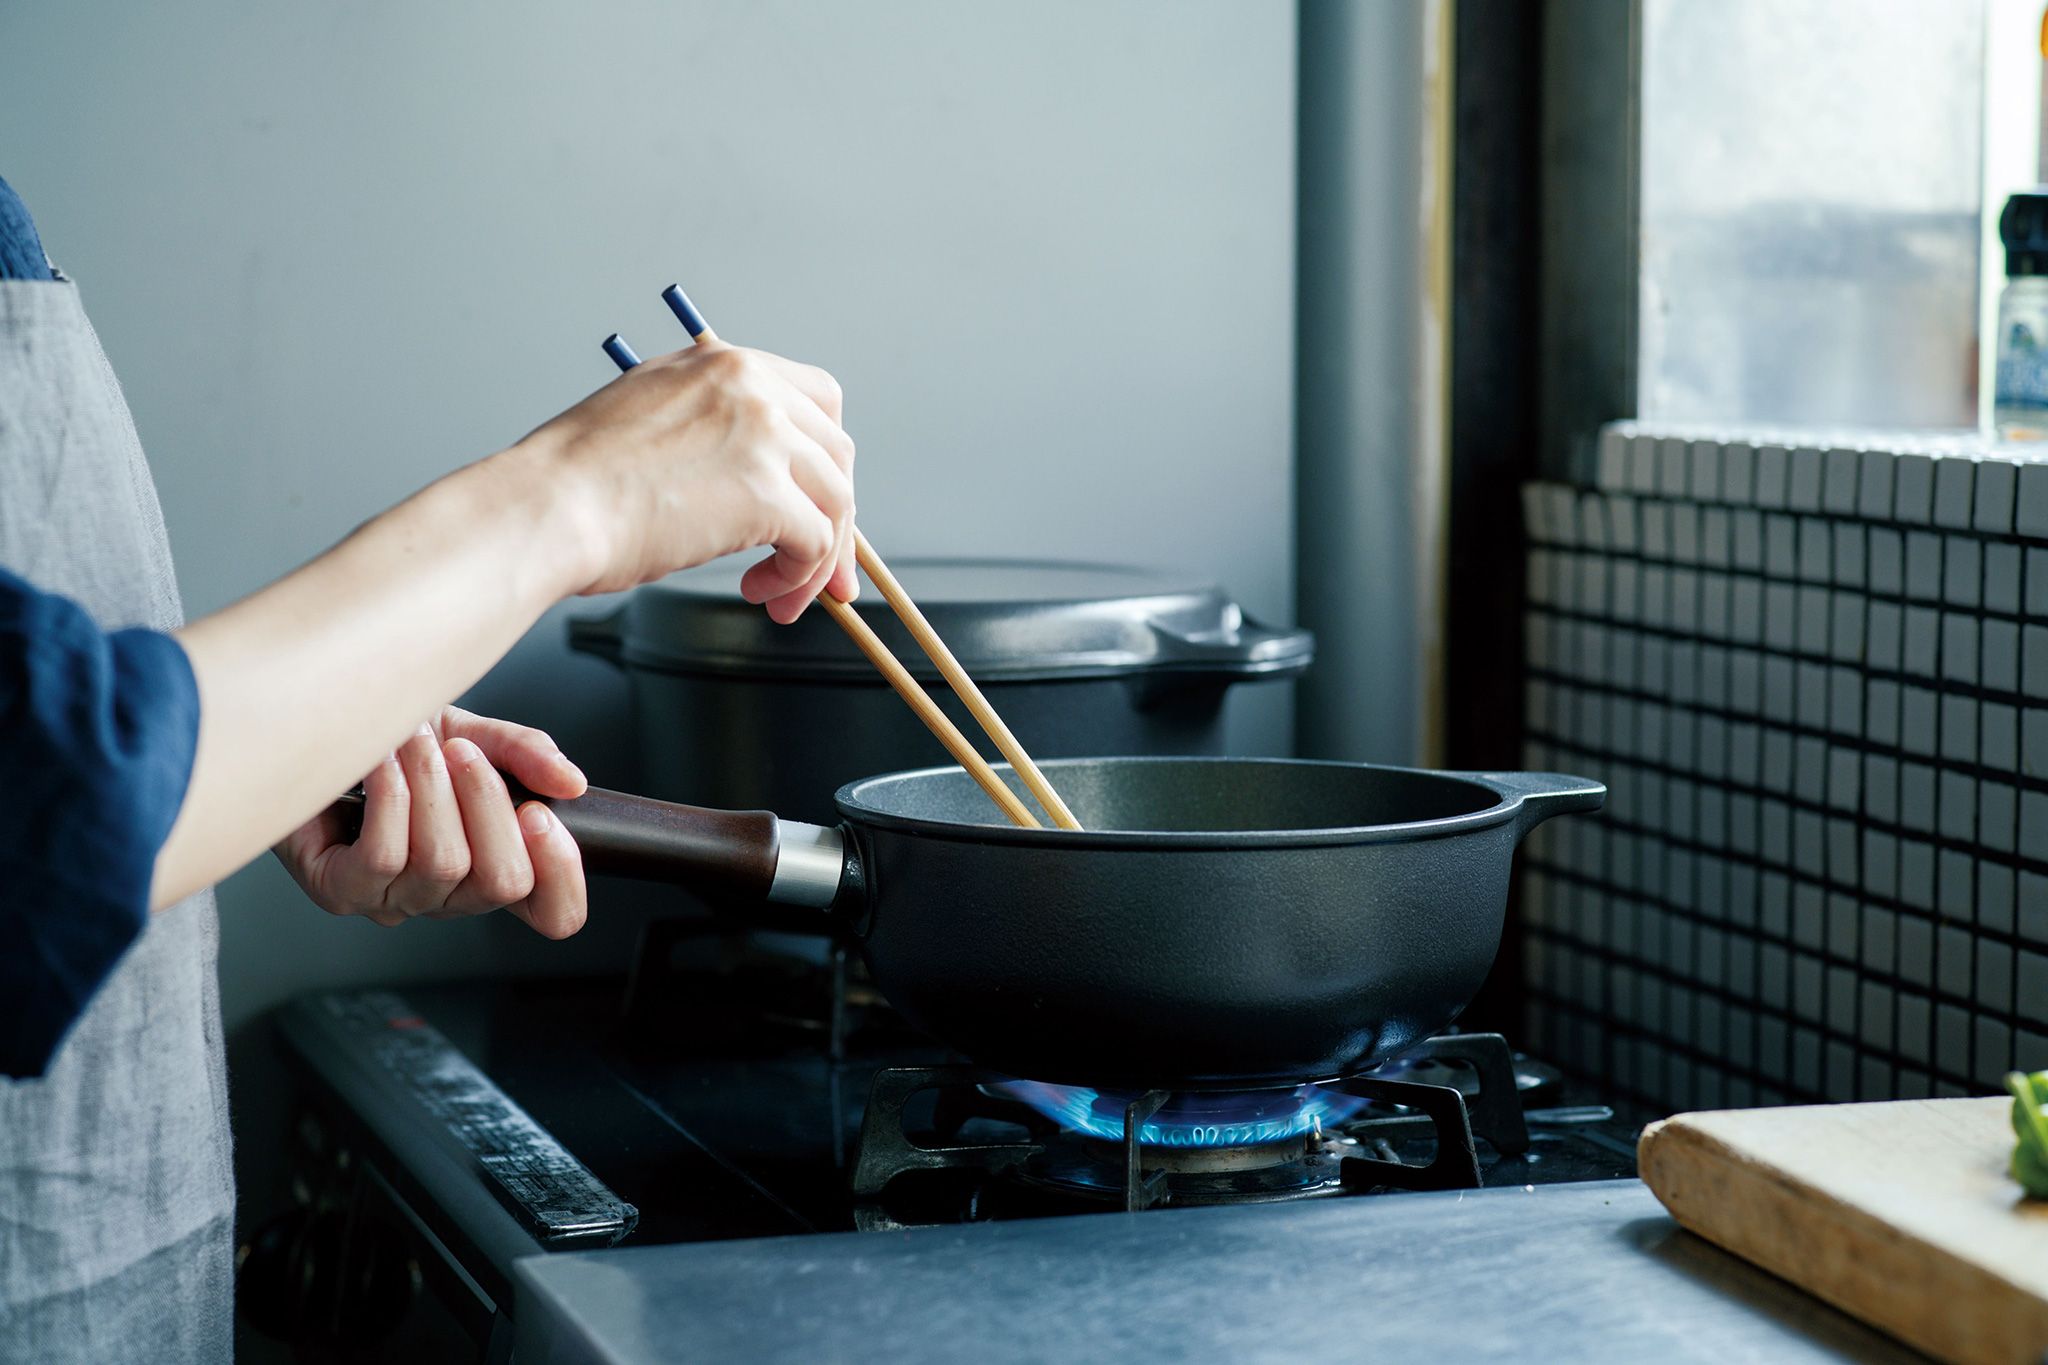 味わい鍋 片手20㎝ - 味わい鍋 公式オンラインストア – 味わい鍋 公式 